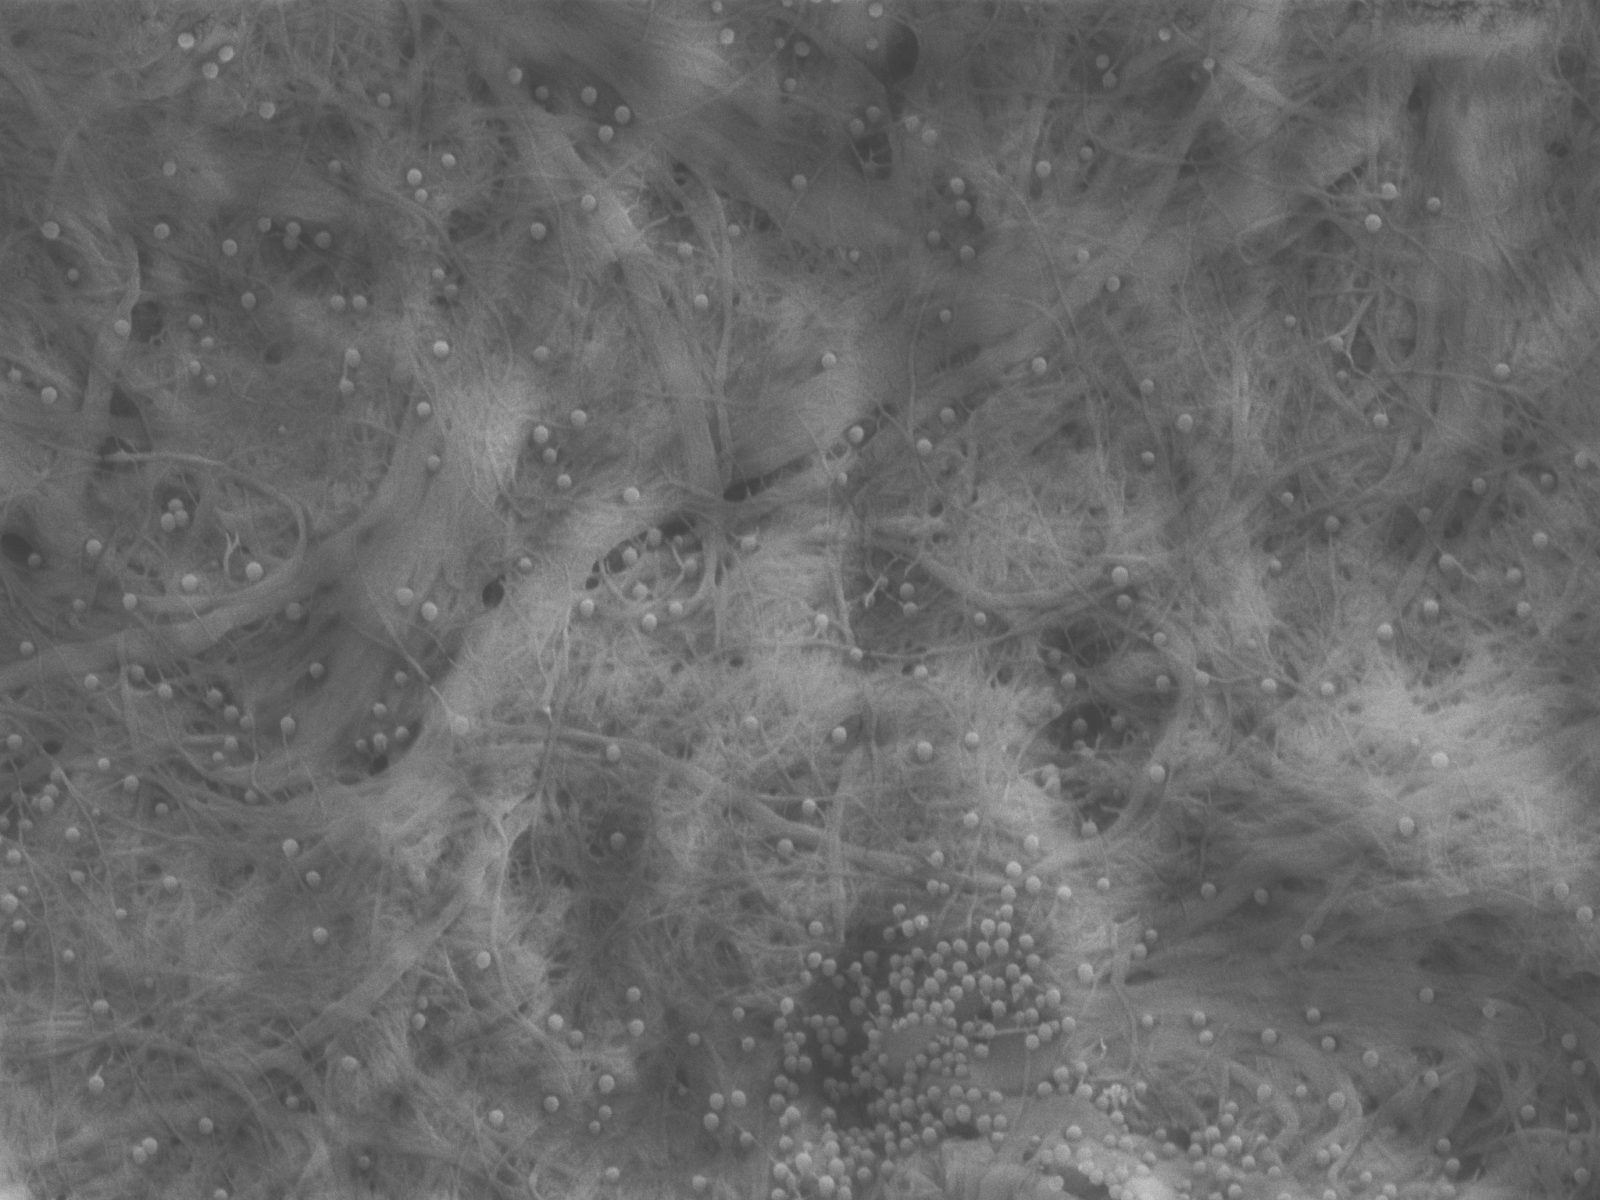 Nanosellu kaappaa mikromuovin